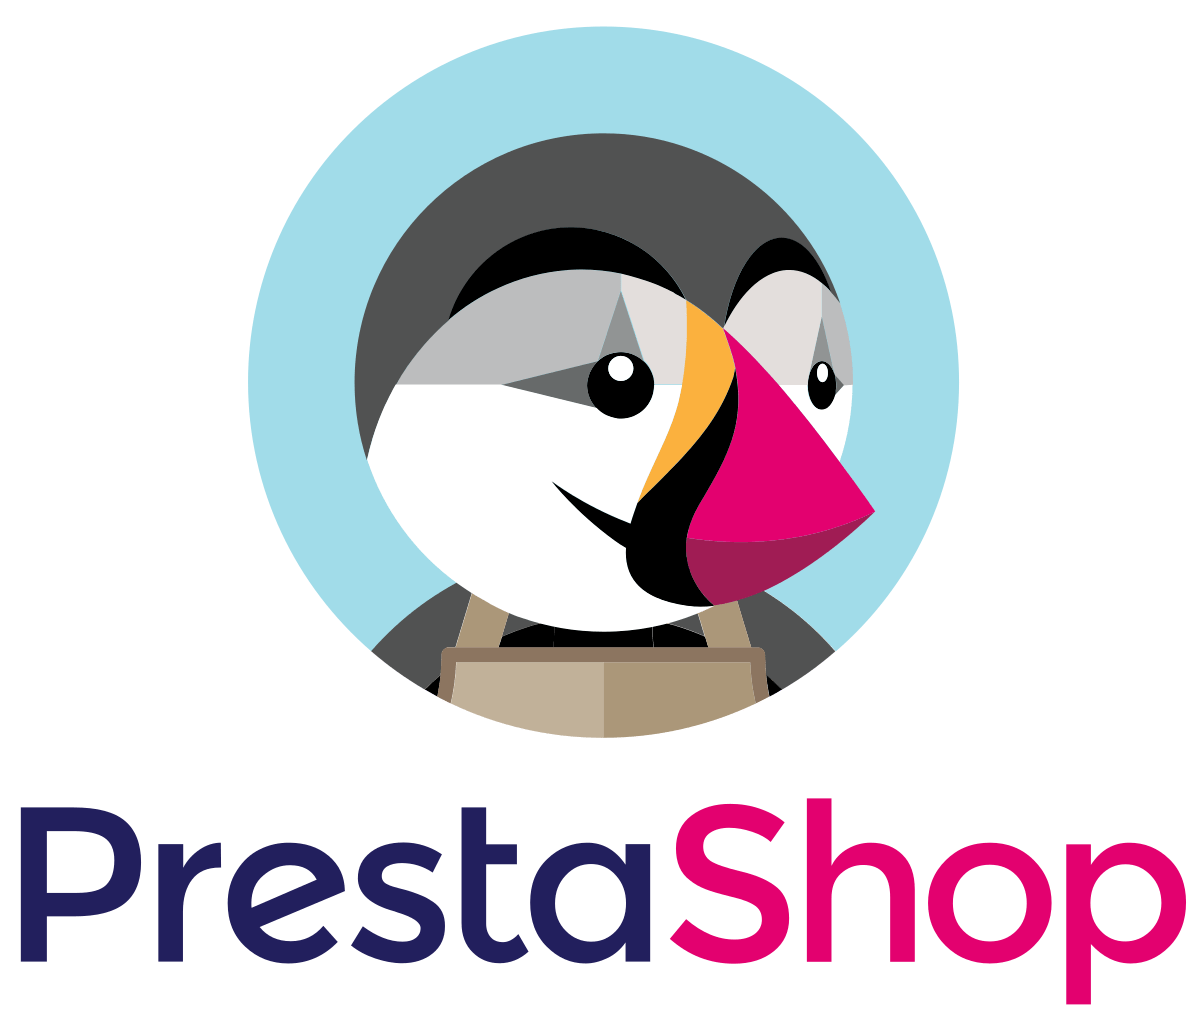 Het logo van PrestaShop.